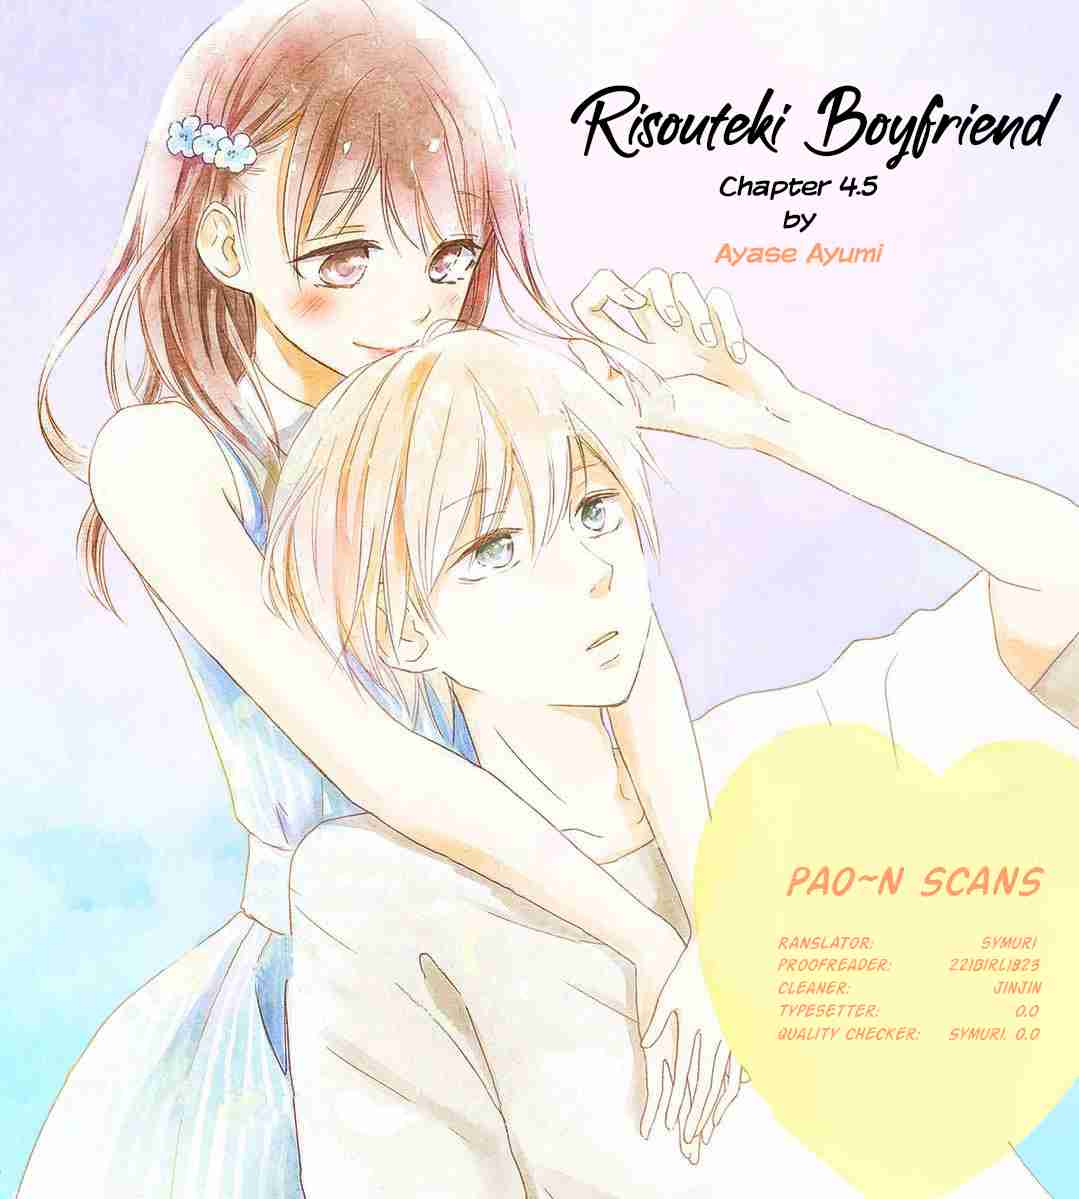 Risouteki Boyfriend Vol.1 Ch.4.5